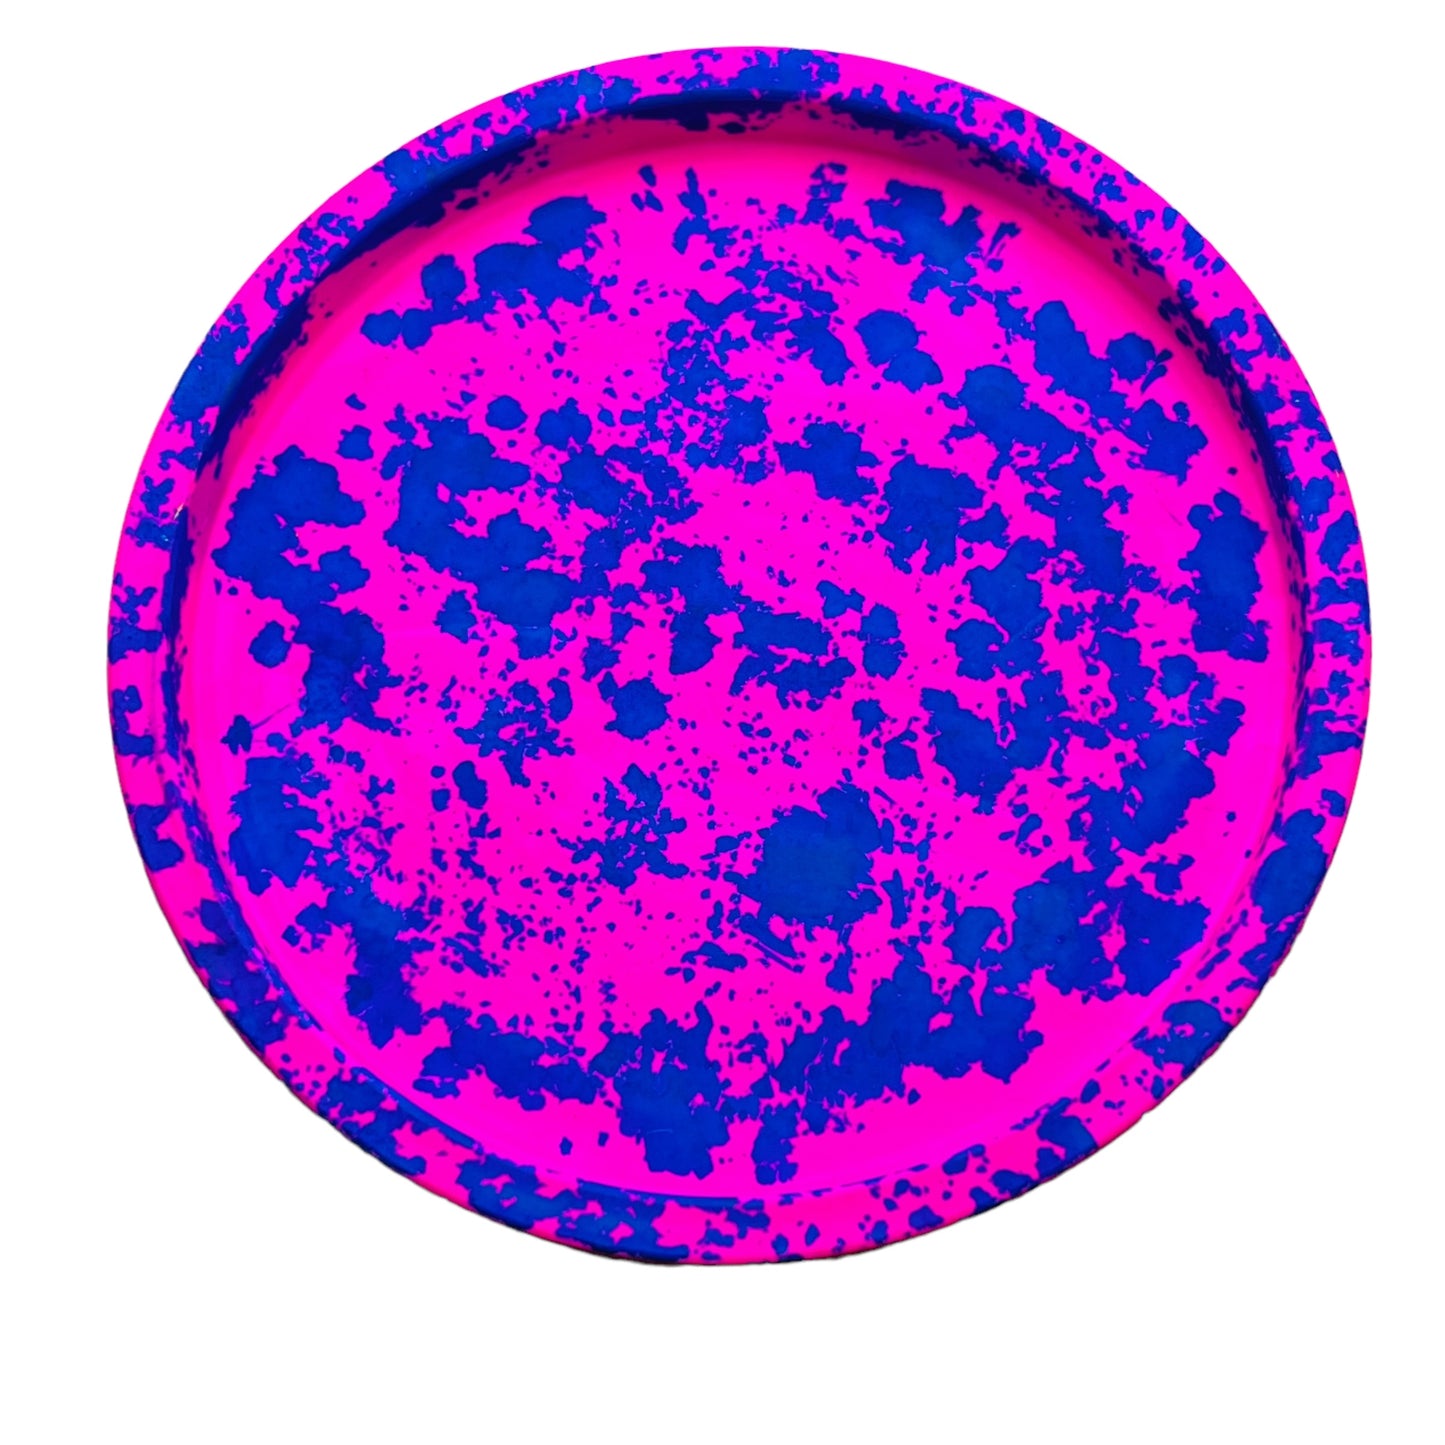 JenDore Bandeja de tocador circular de cerámica hecha a mano con salpicaduras de color rosa y azul intenso